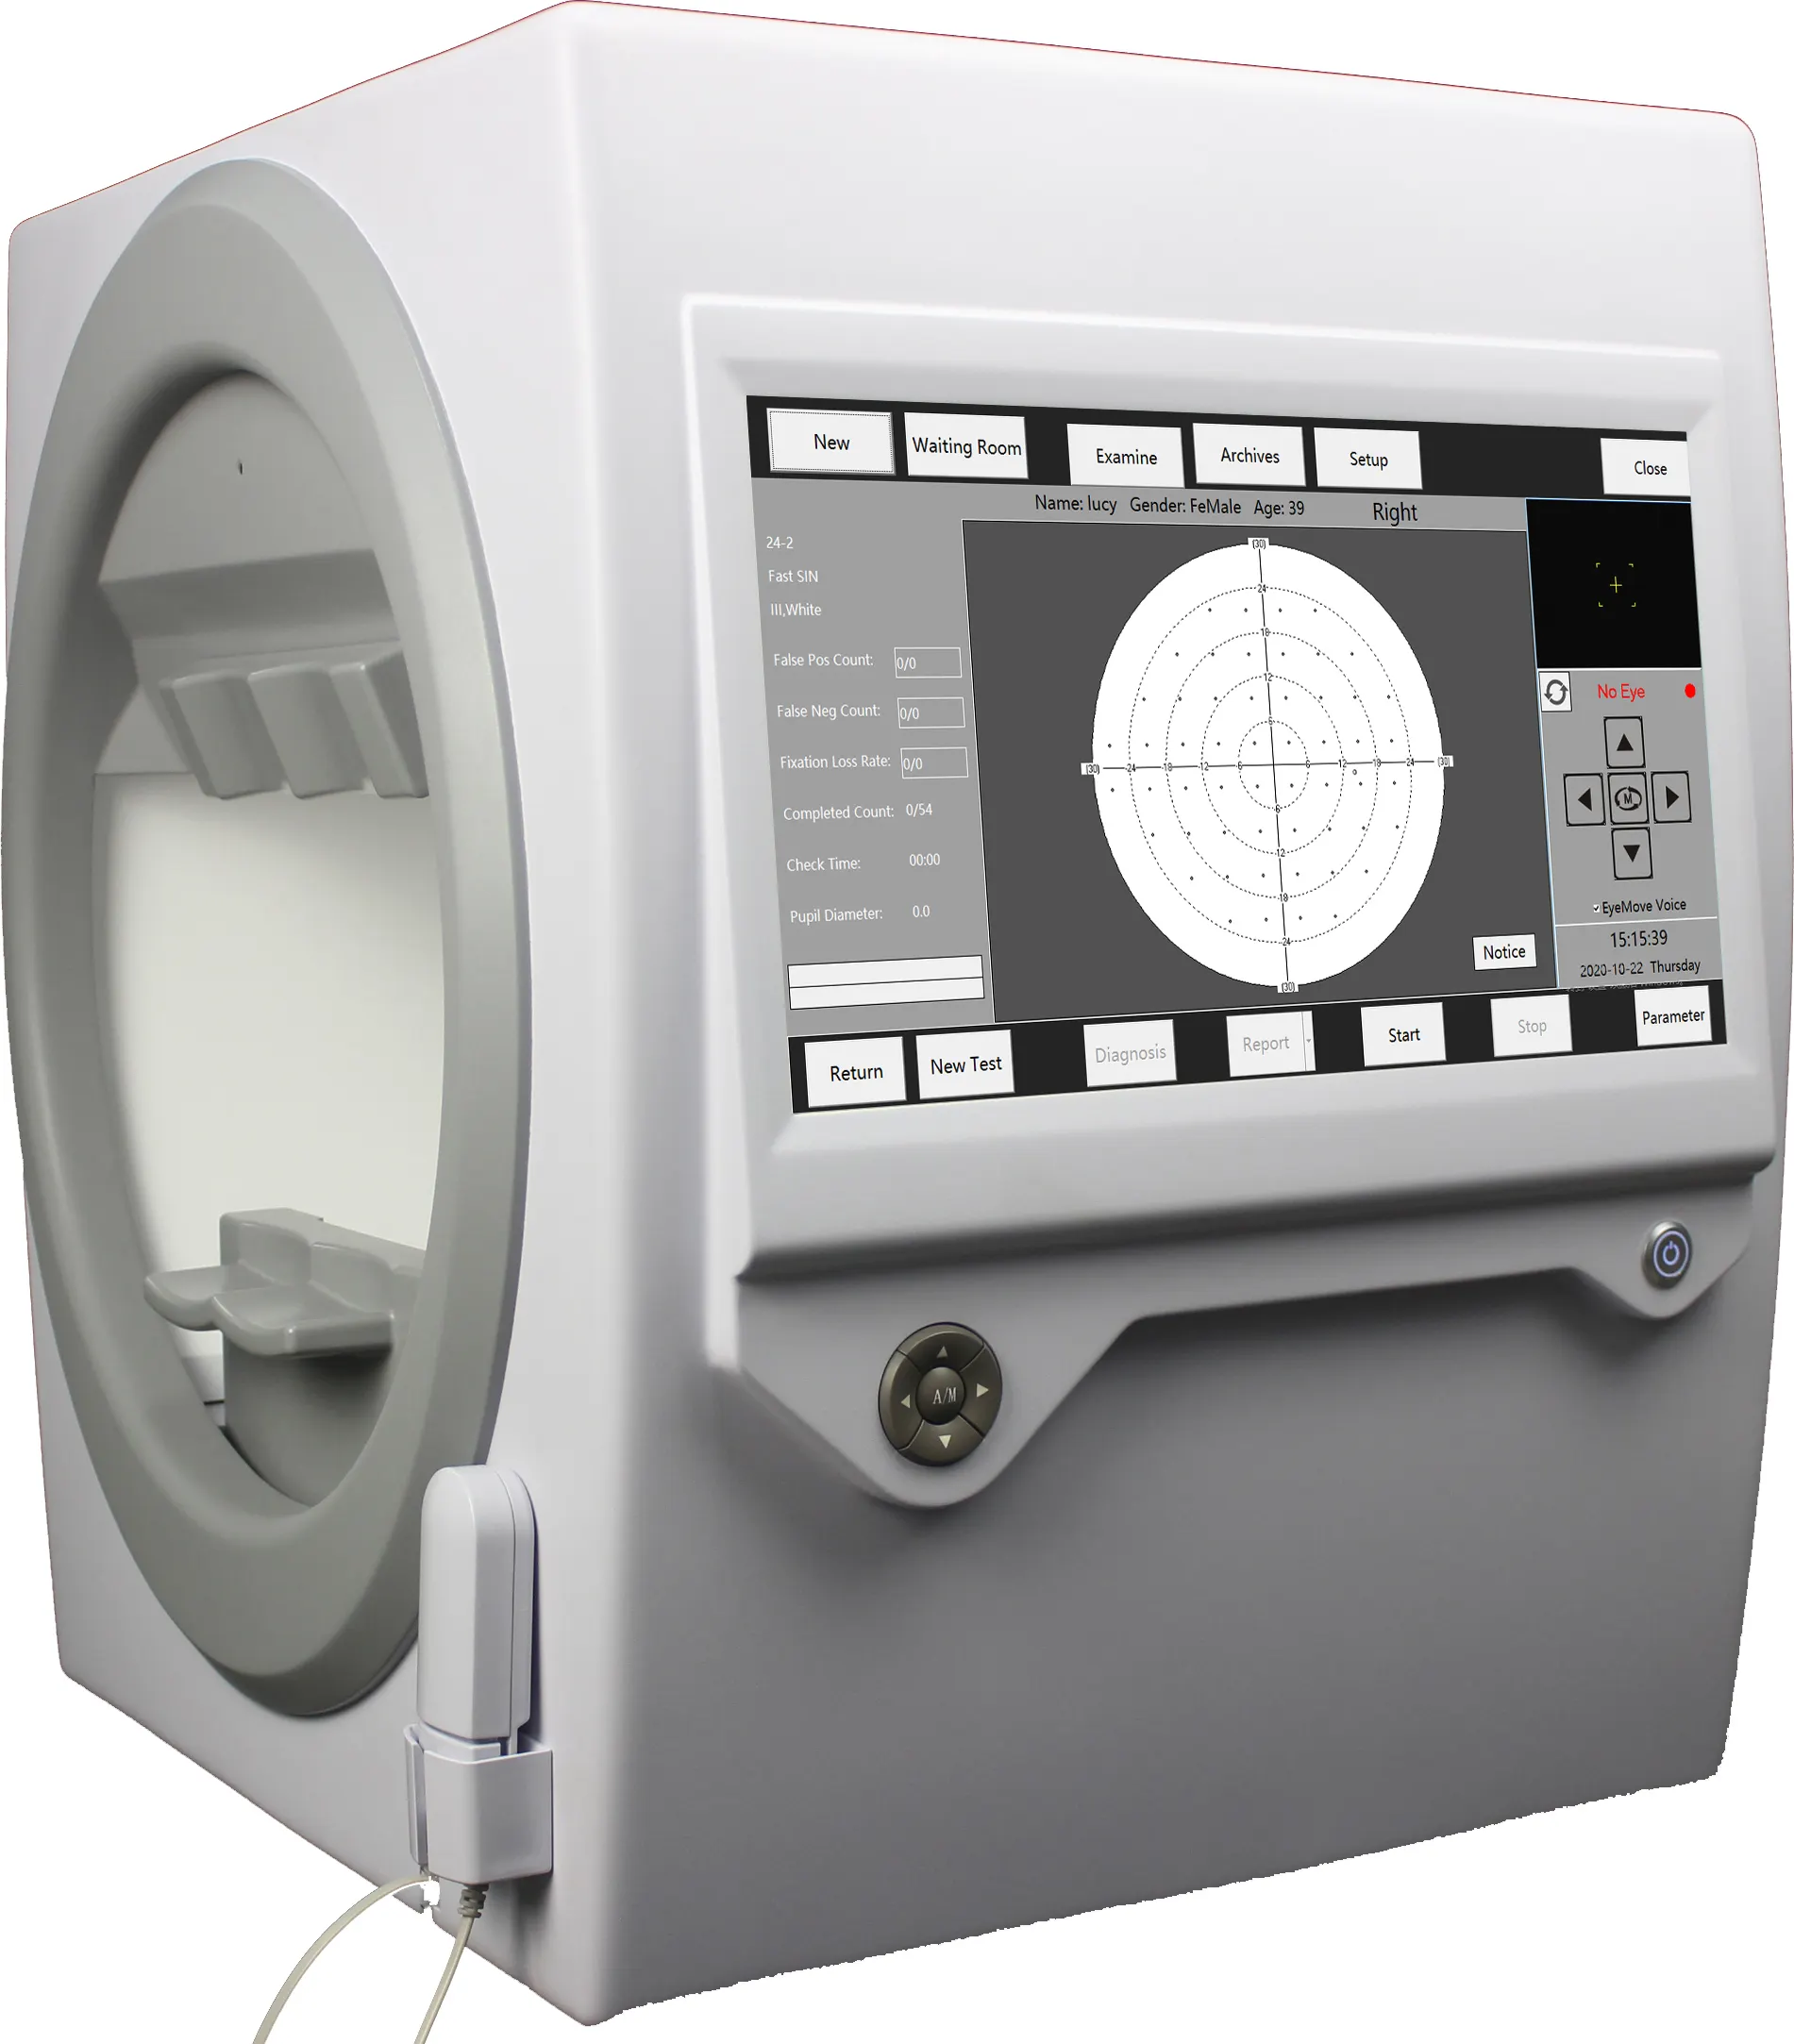 Goldman-analyseur de champ visuel de périmètre automatique, équipement électrique de test oculaire CE